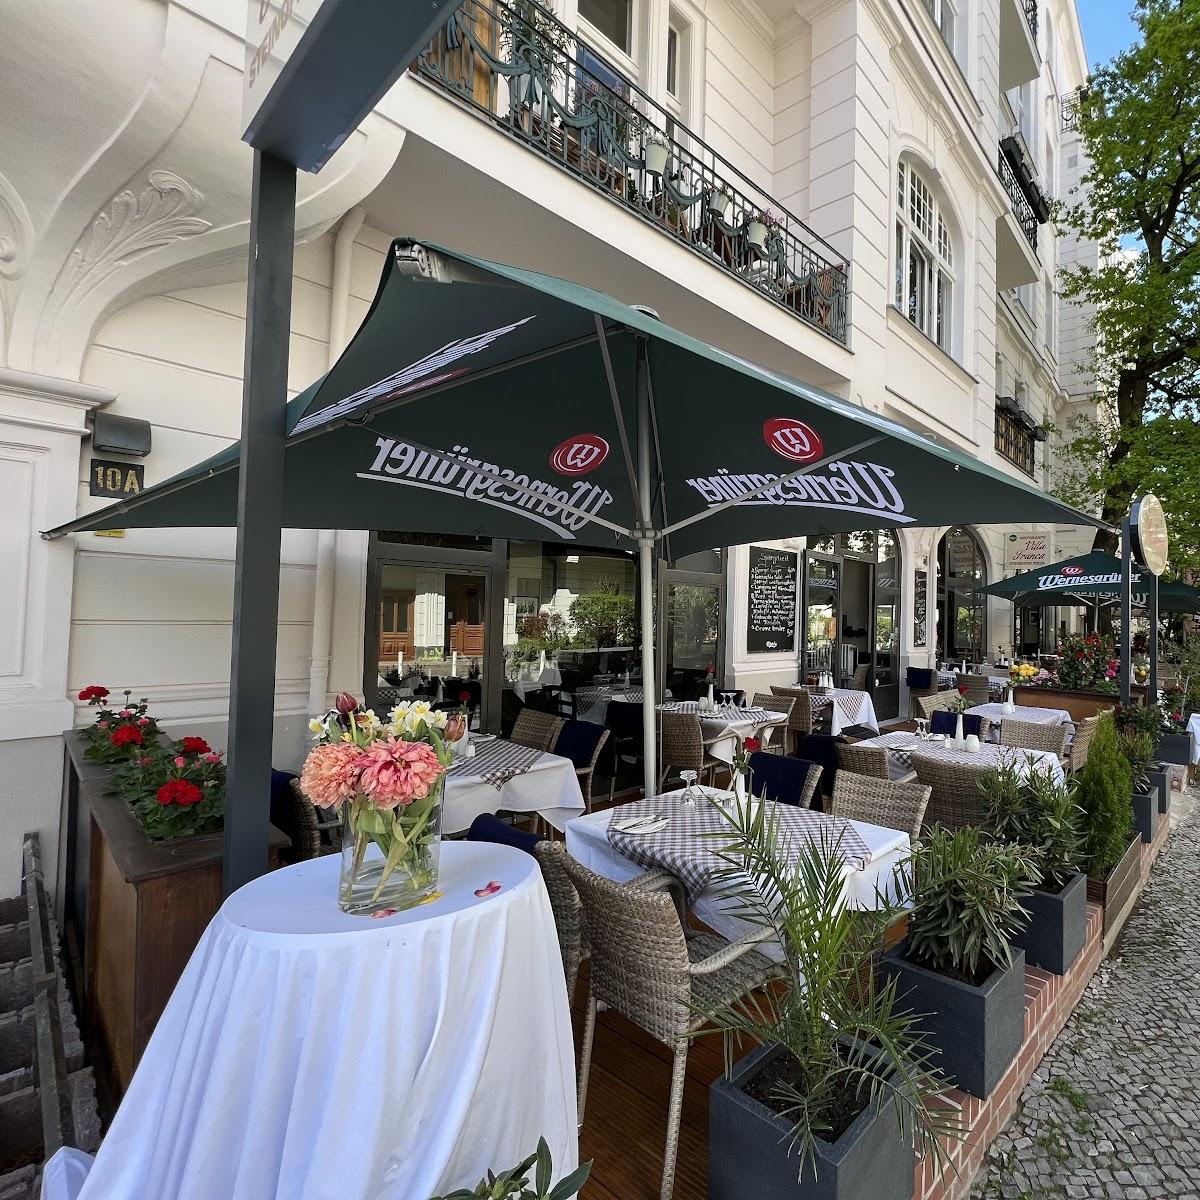 Restaurant "Villa Franca" in Berlin